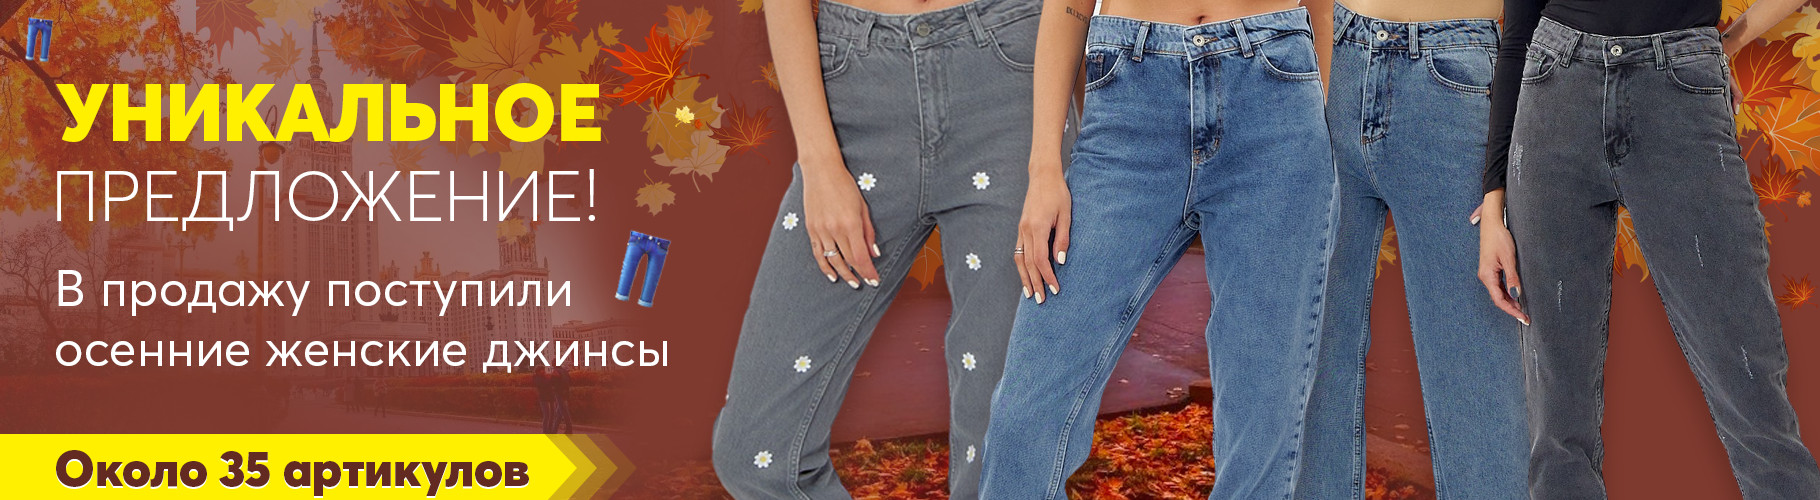 Осенние женские джинсы